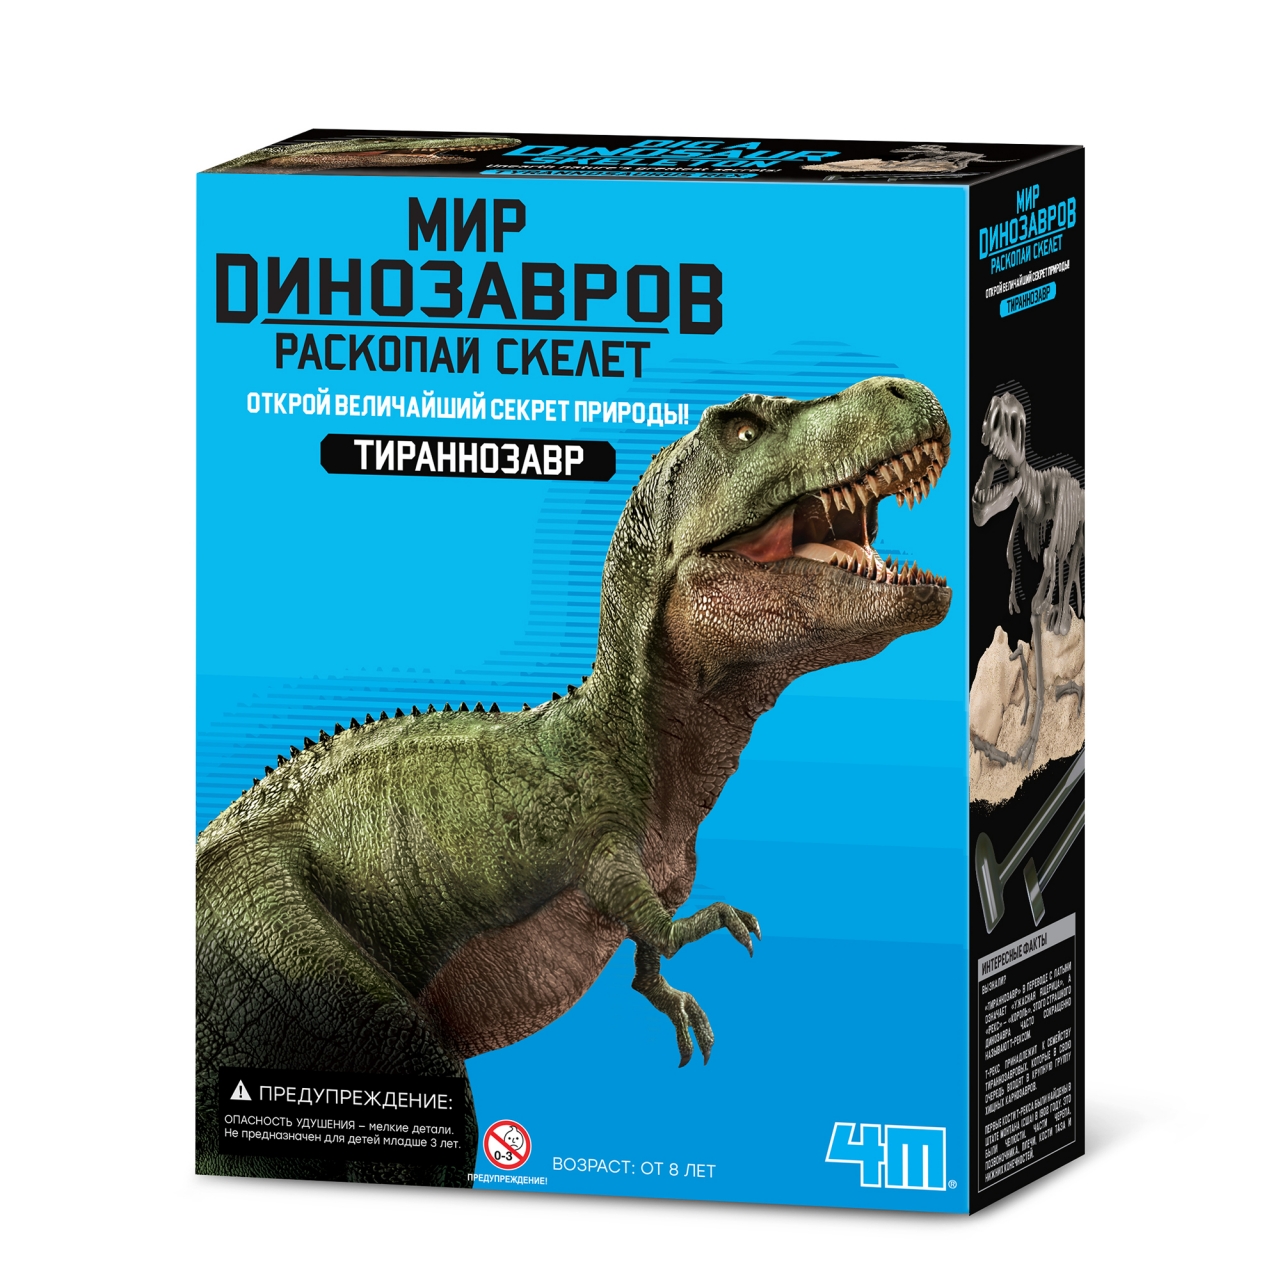 Набор для опытов 4М Игра раскопки для детей Раскопай скелет динозавра Фигурка Тираннозавра